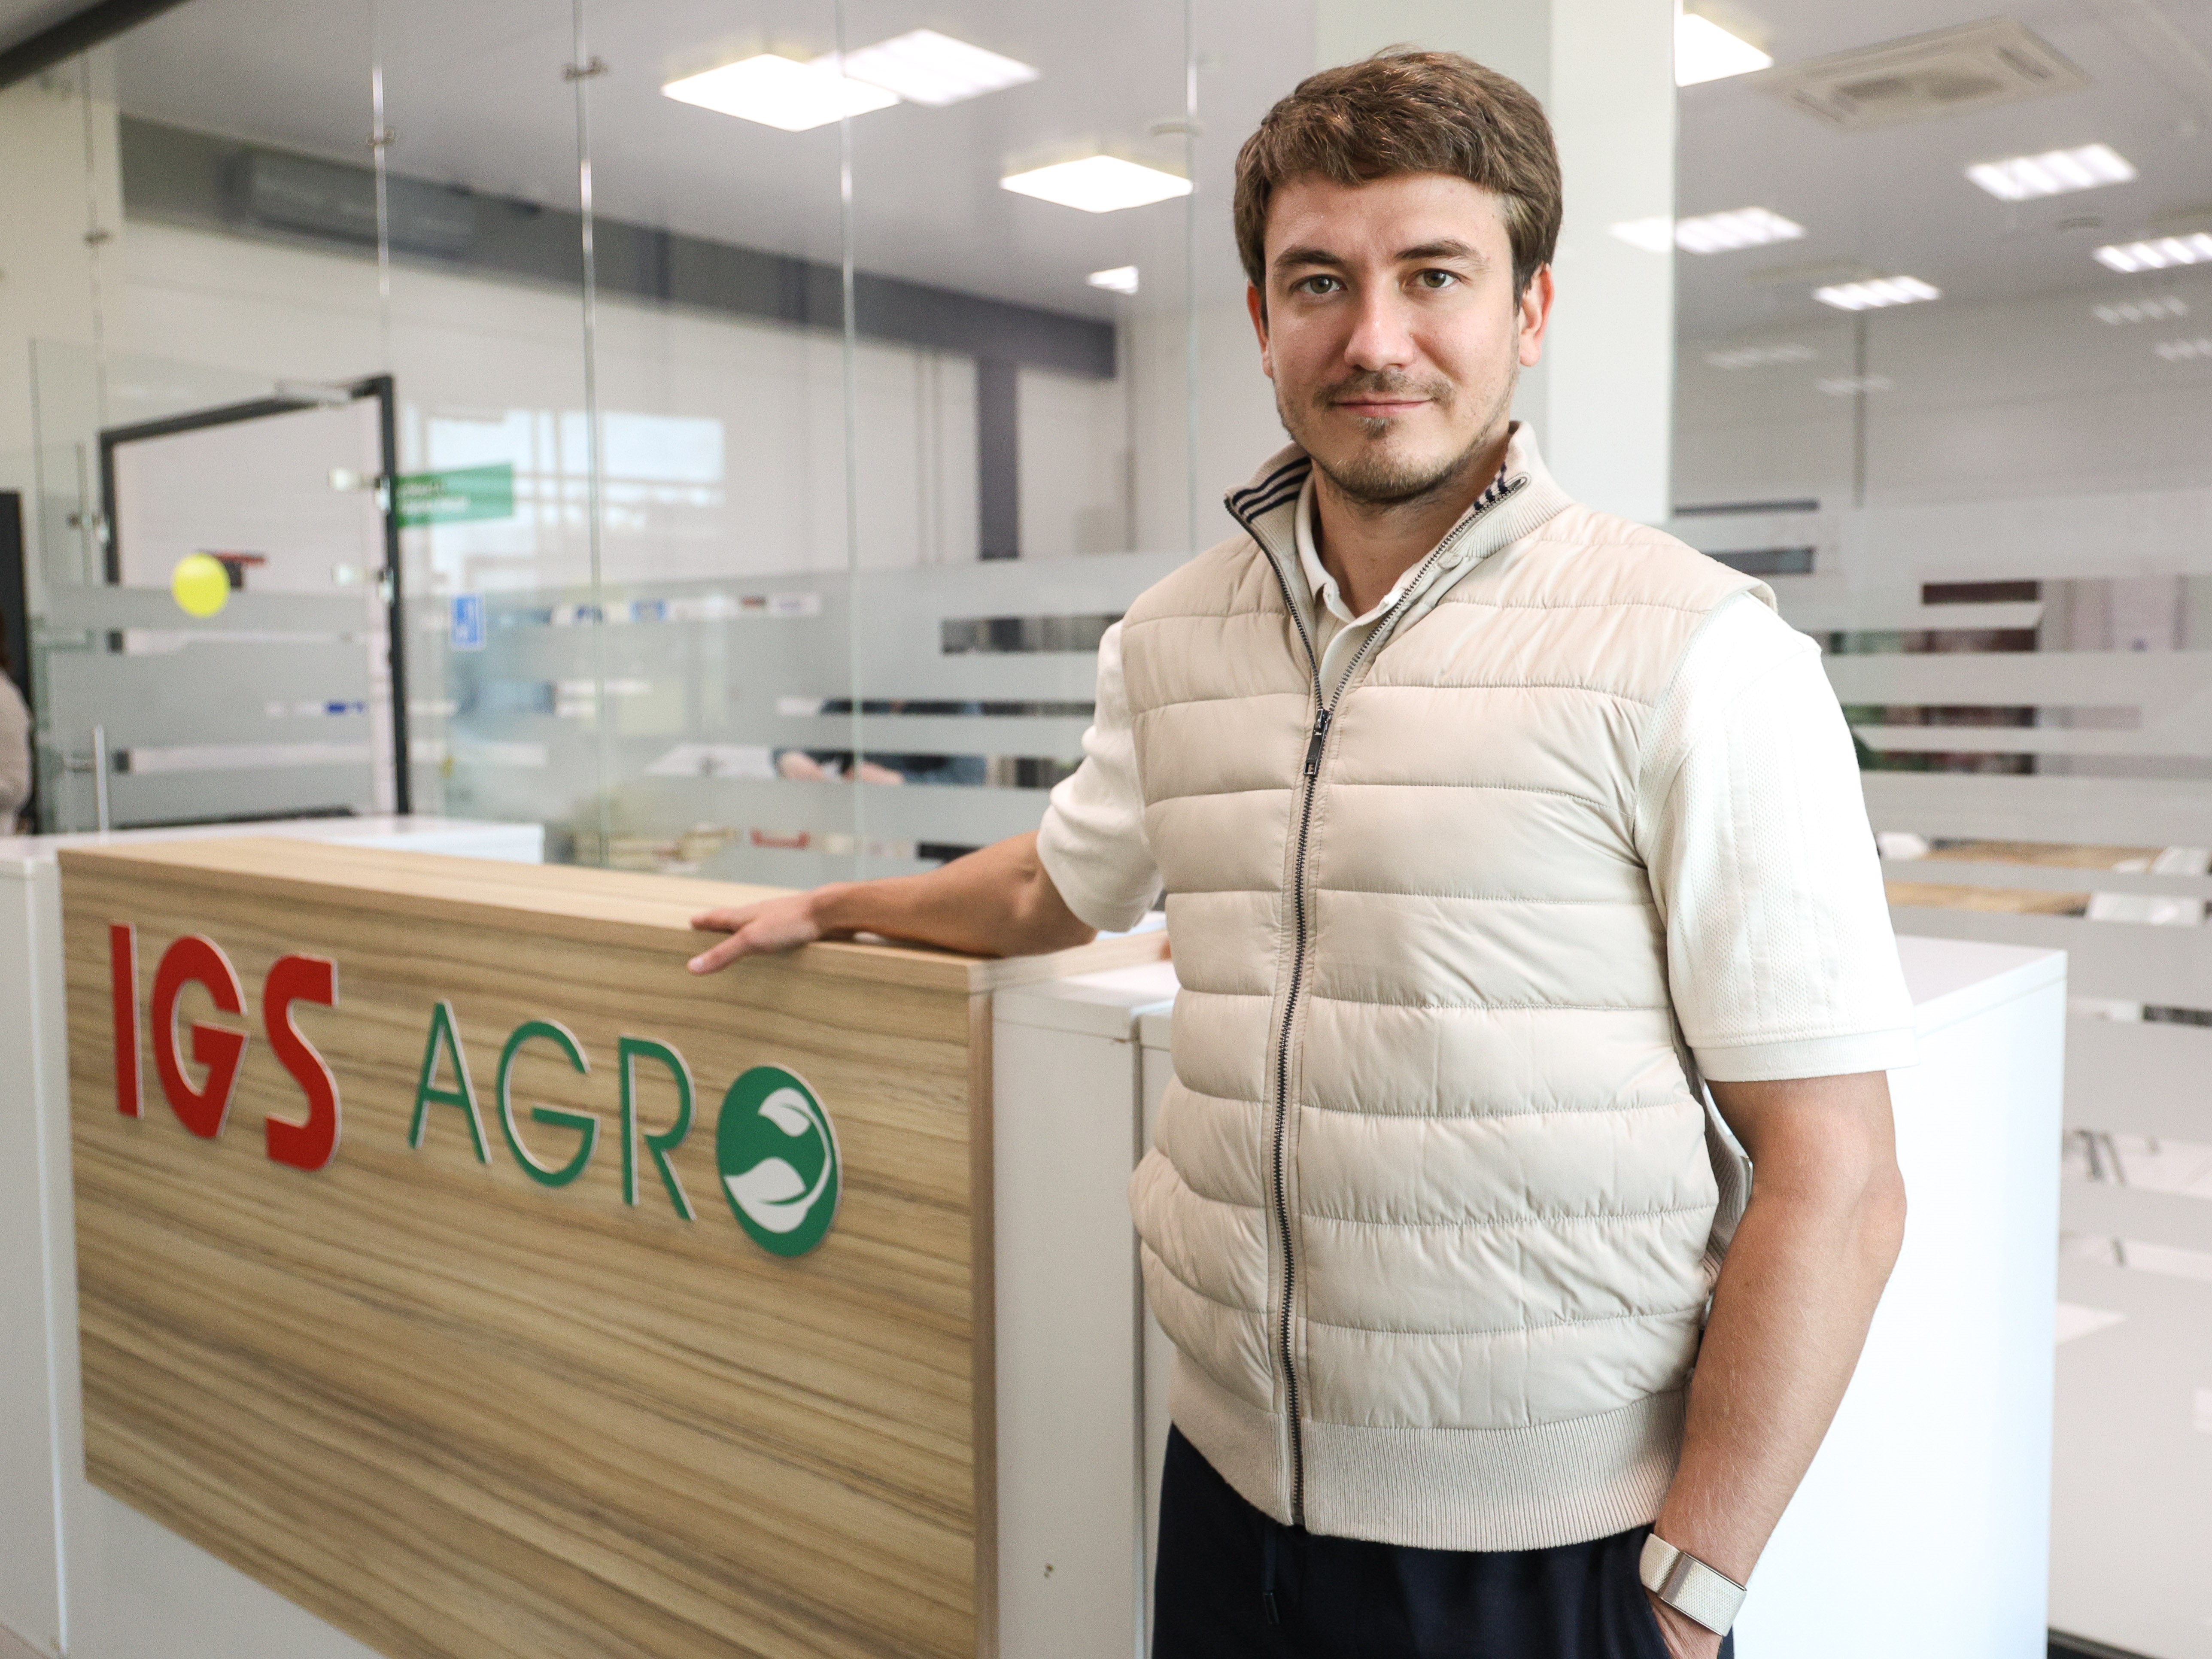 Азат Шайдуллин, IGS Agro: «Мы пережили то, после чего 98% предприятий закрываются»